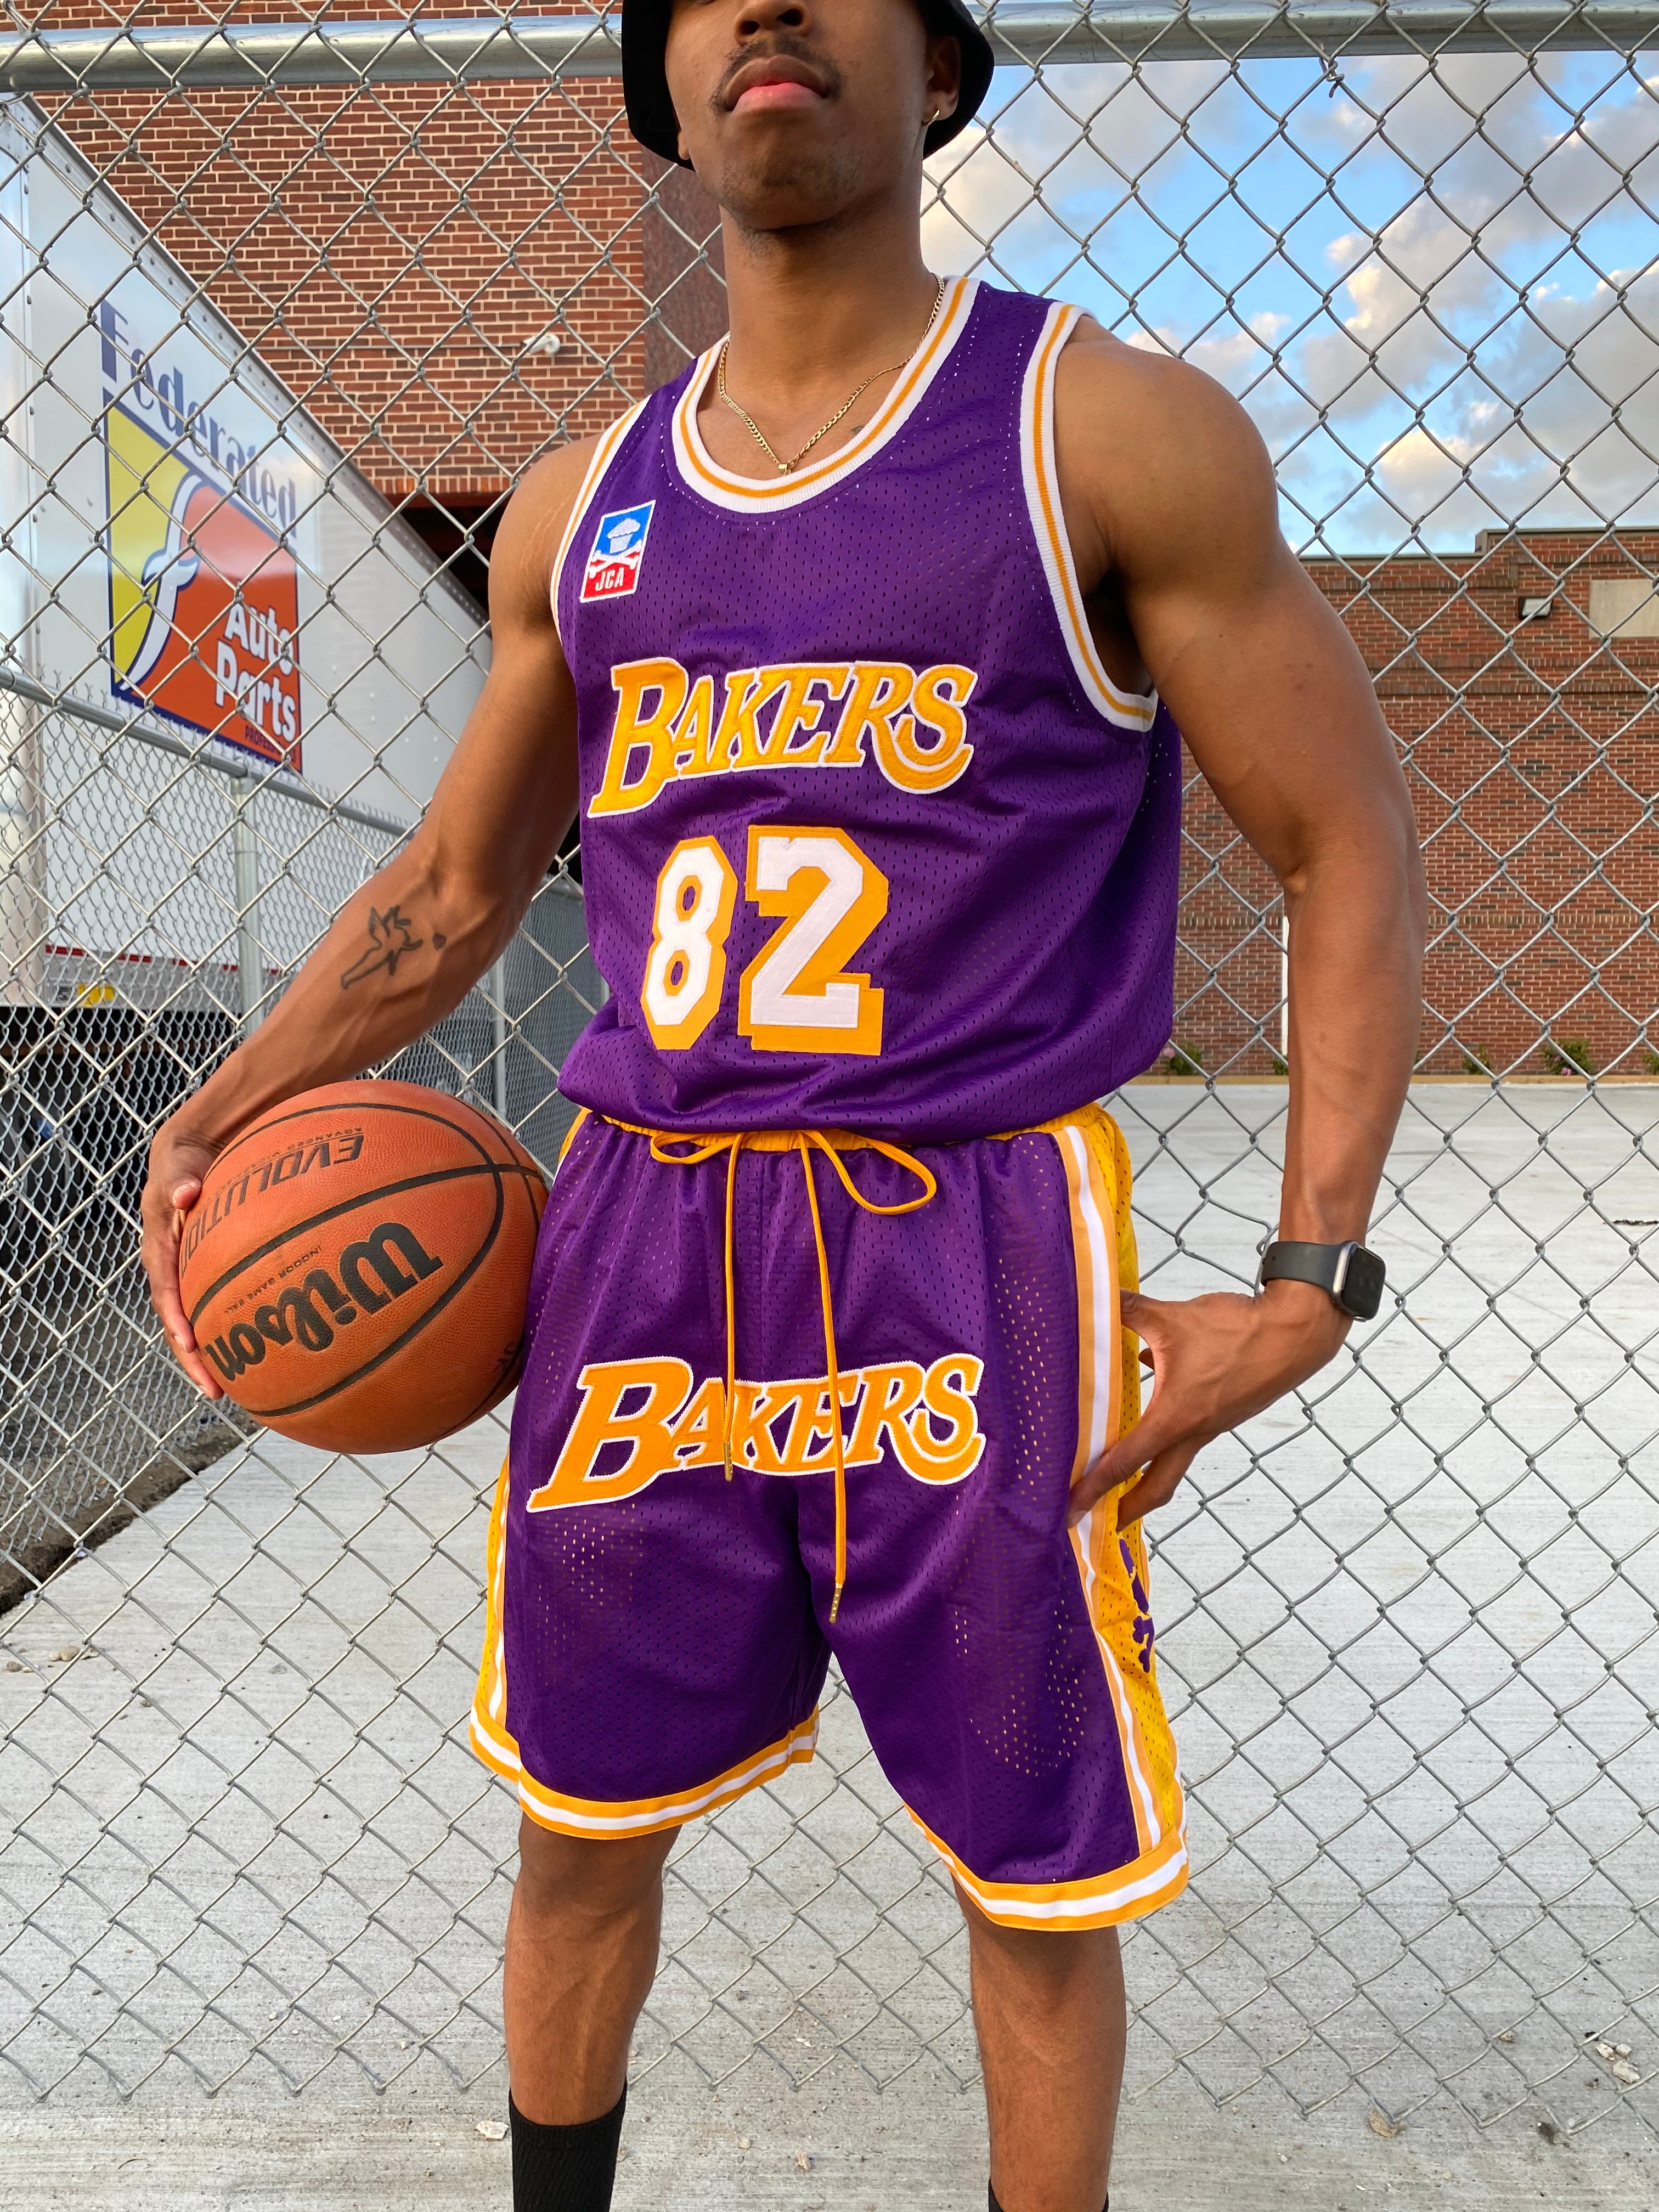 Los Angeles Lakers Shorts Black - Basketball Shorts Store